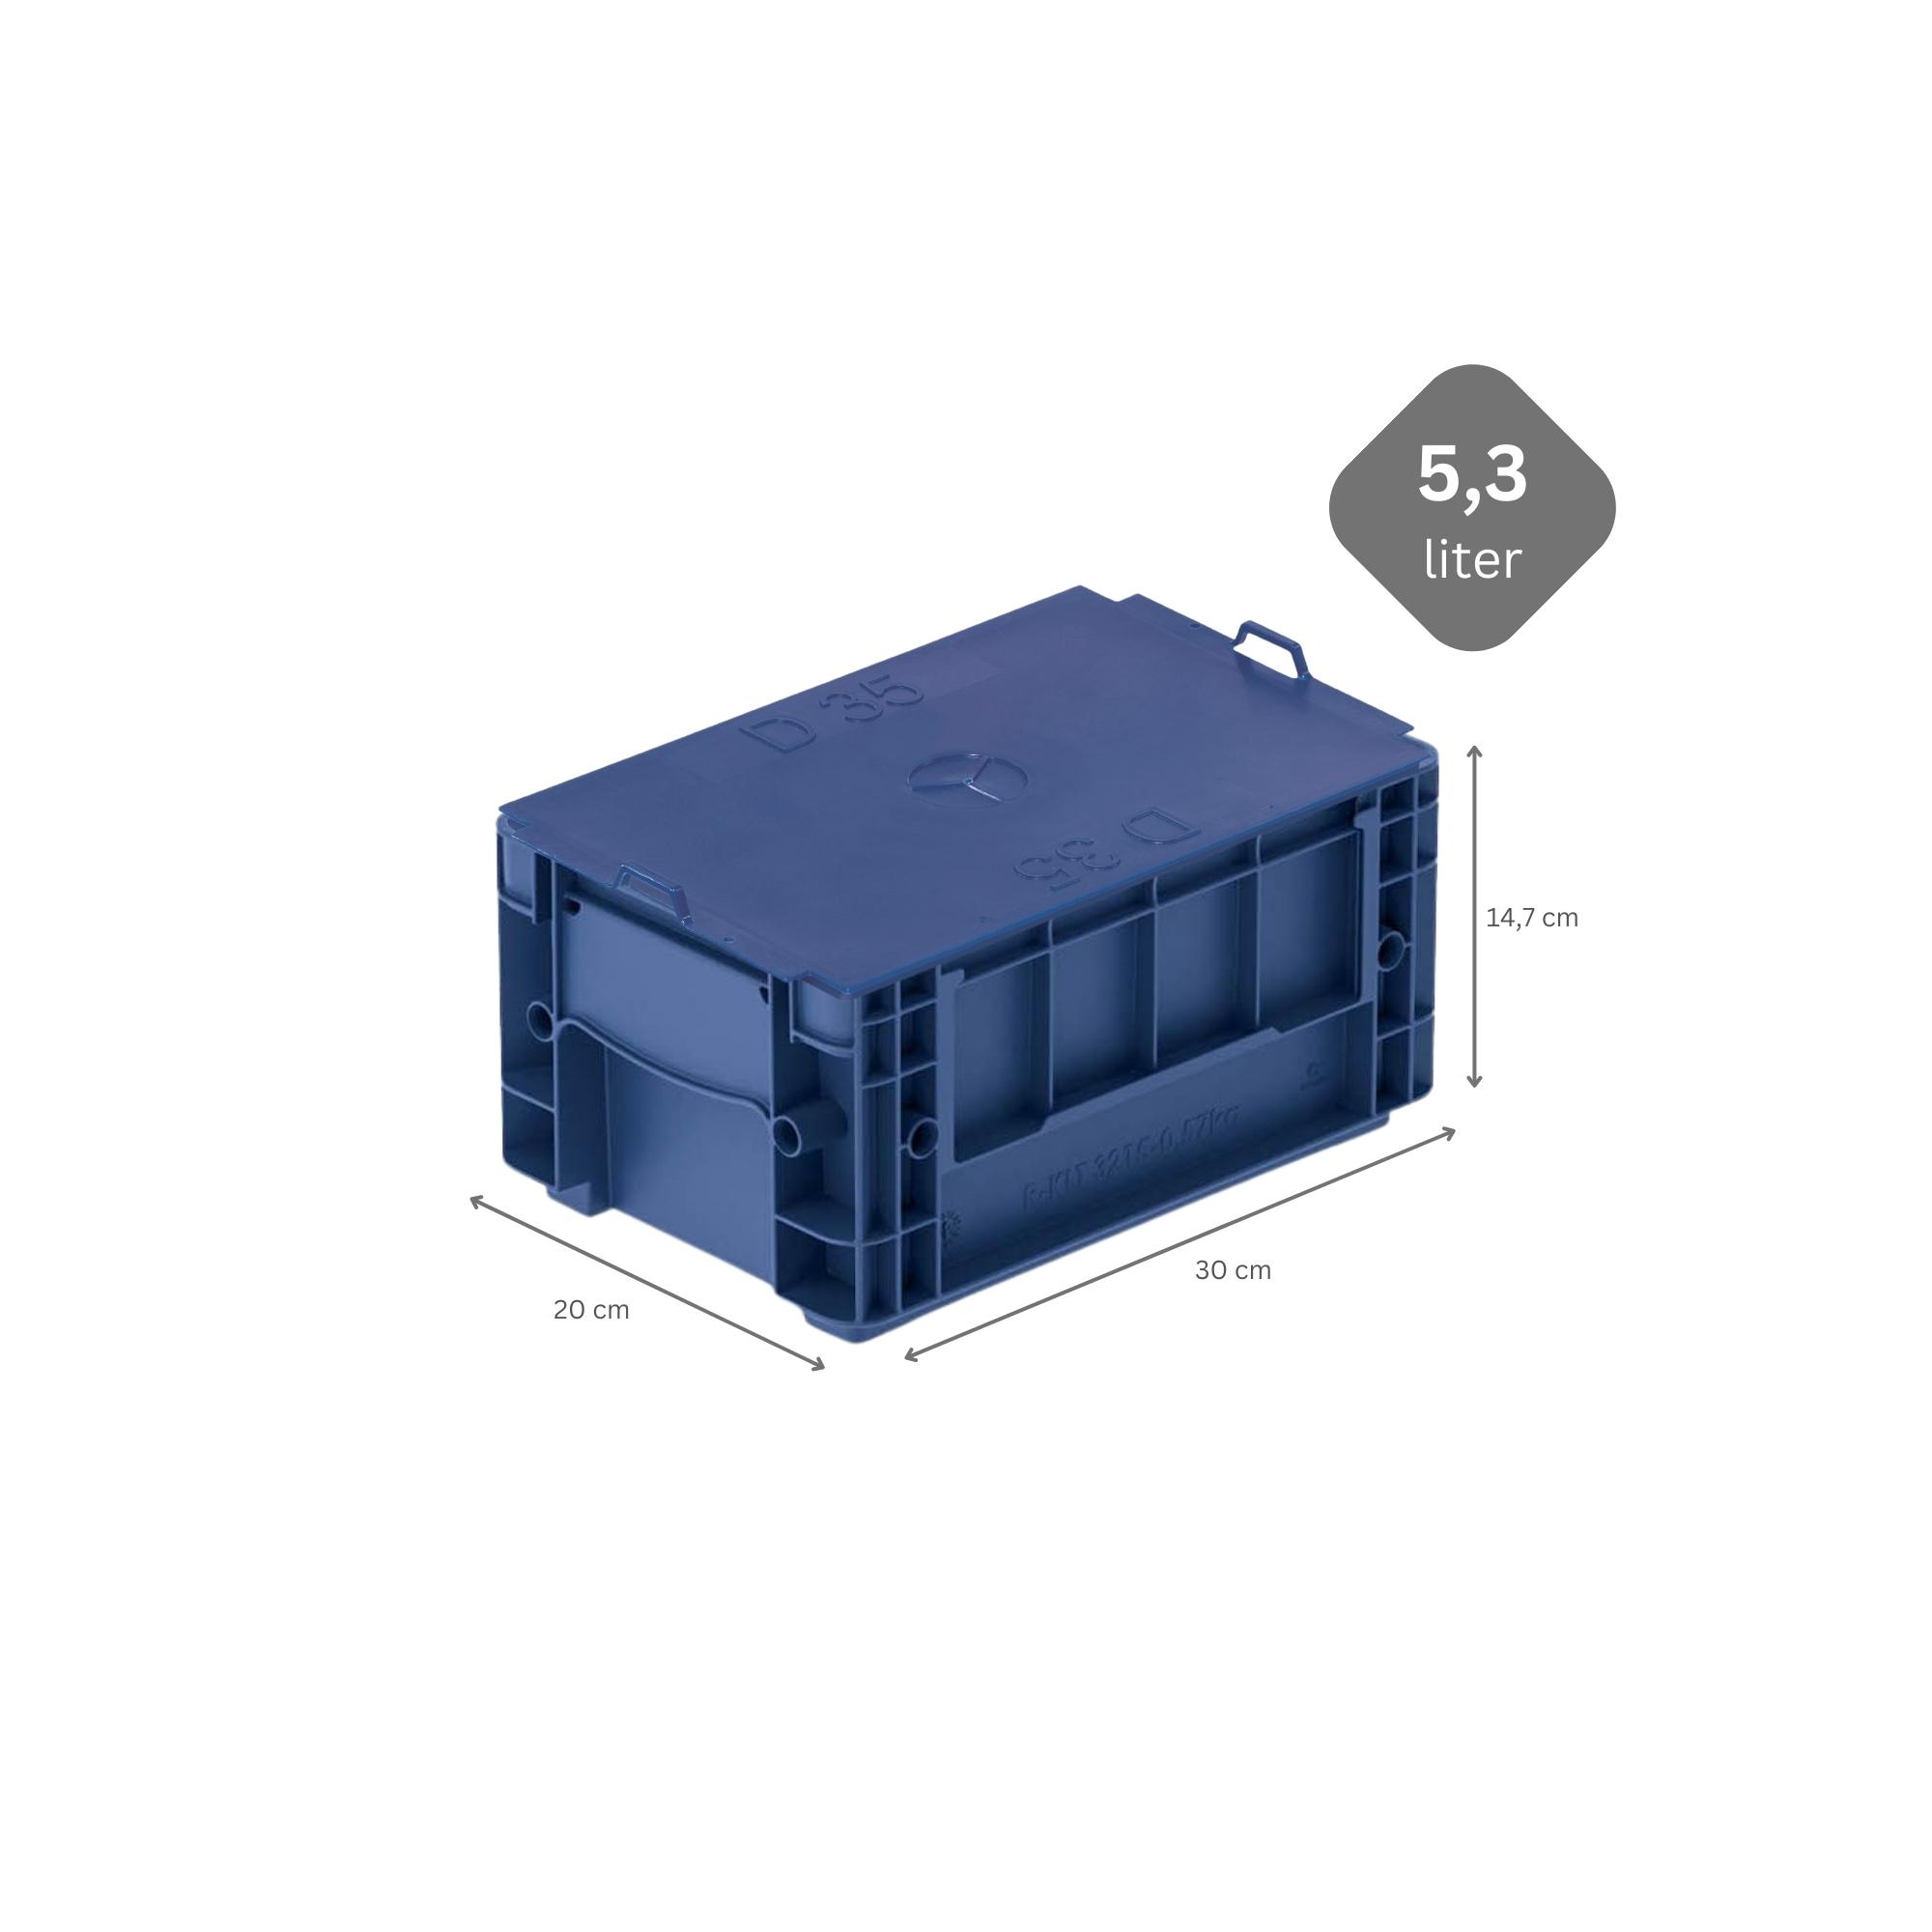 VDA KLT Kleinladungsträger mit Verbundboden & Auflagedeckel | HxBxT 14,7x20x30cm | 5,3 Liter | KLT, Transportbox, Transportbehälter, Stapelbehälter